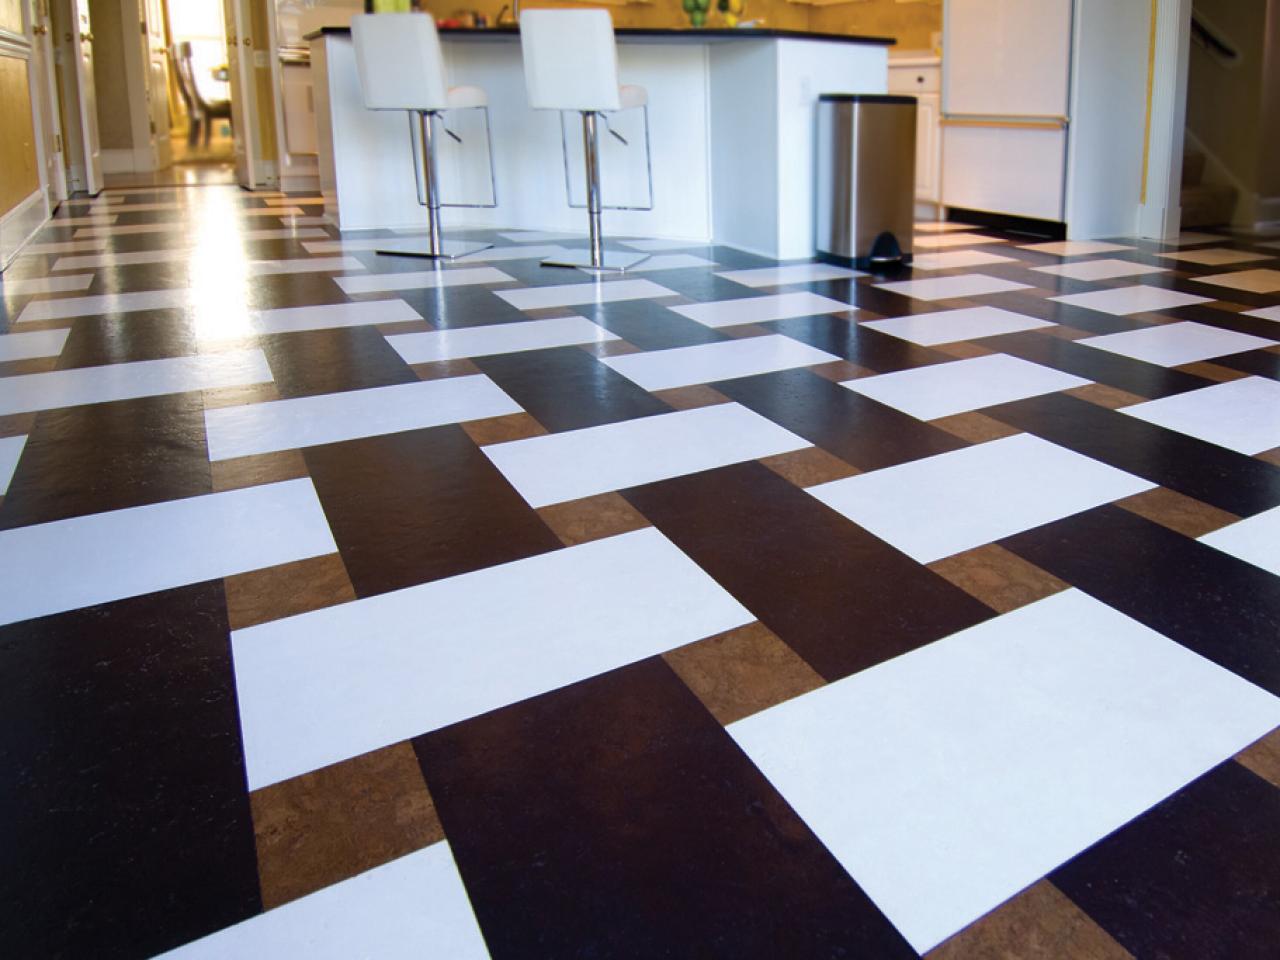 Cork Flooring In Basements, Basement Floor Tile